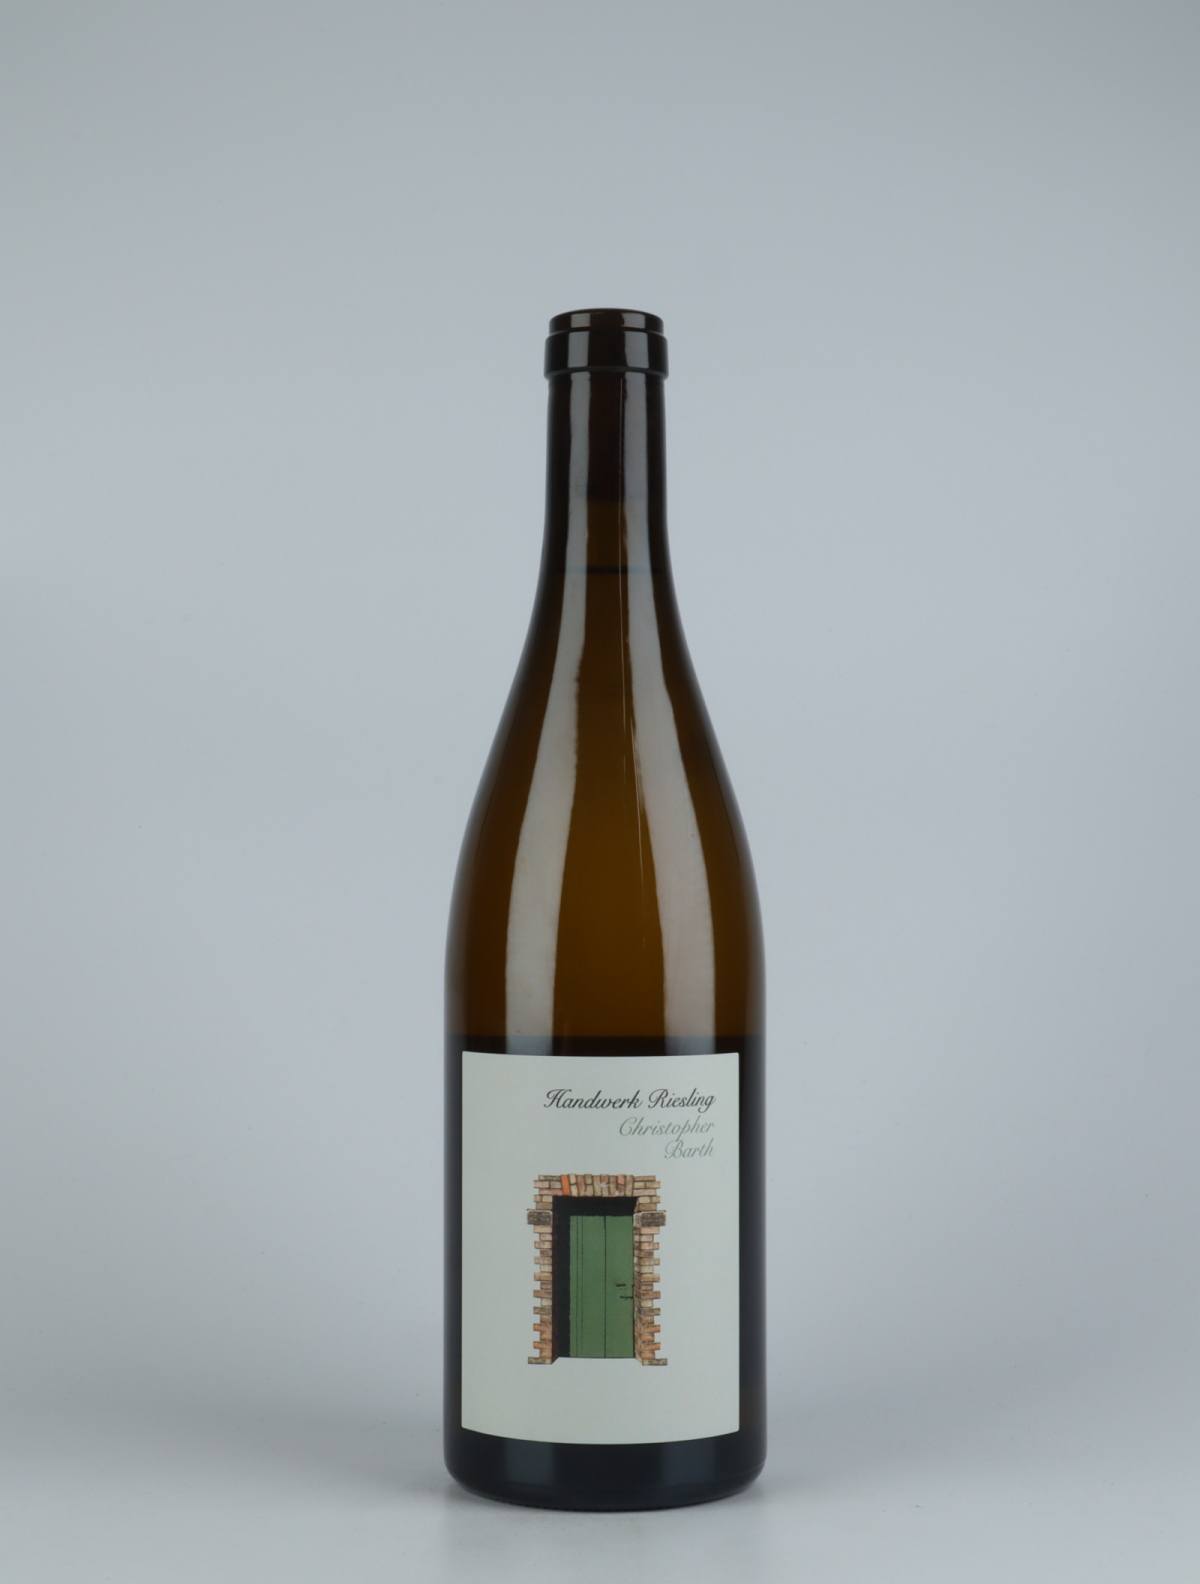 A bottle 2020 Handwerk Riesling White wine from Christopher Barth, Rheinhessen in Germany